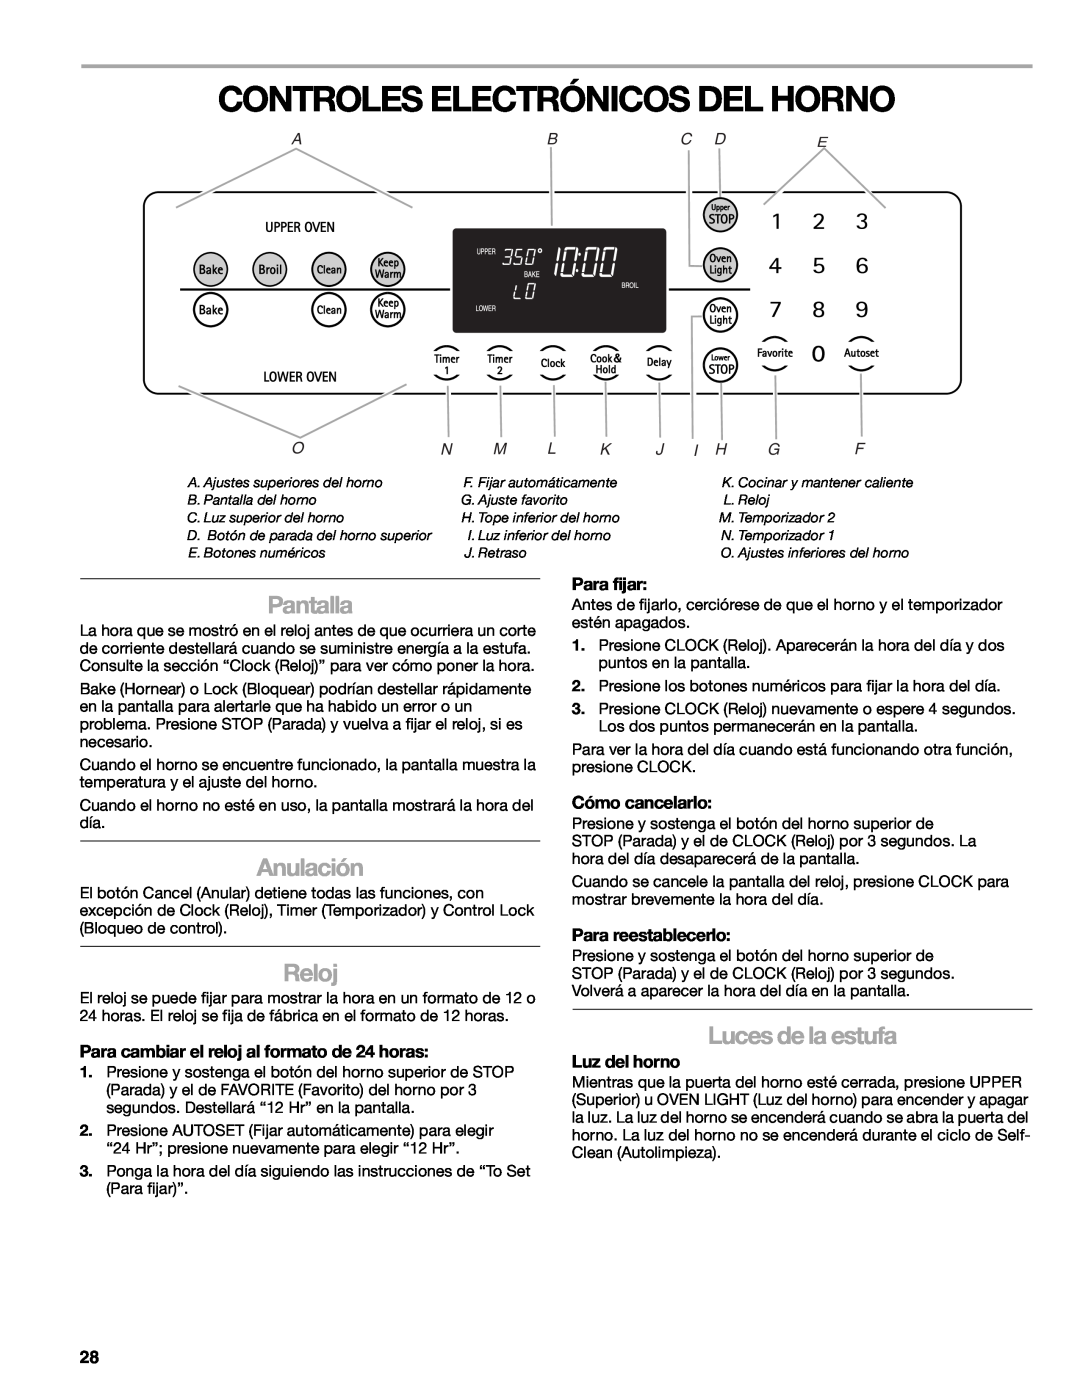 Kenmore W10166292A Controles Electrónicos Del Horno, Pantalla, Anulación, Reloj, Luces de la estufa, Para fijar, Abc De 